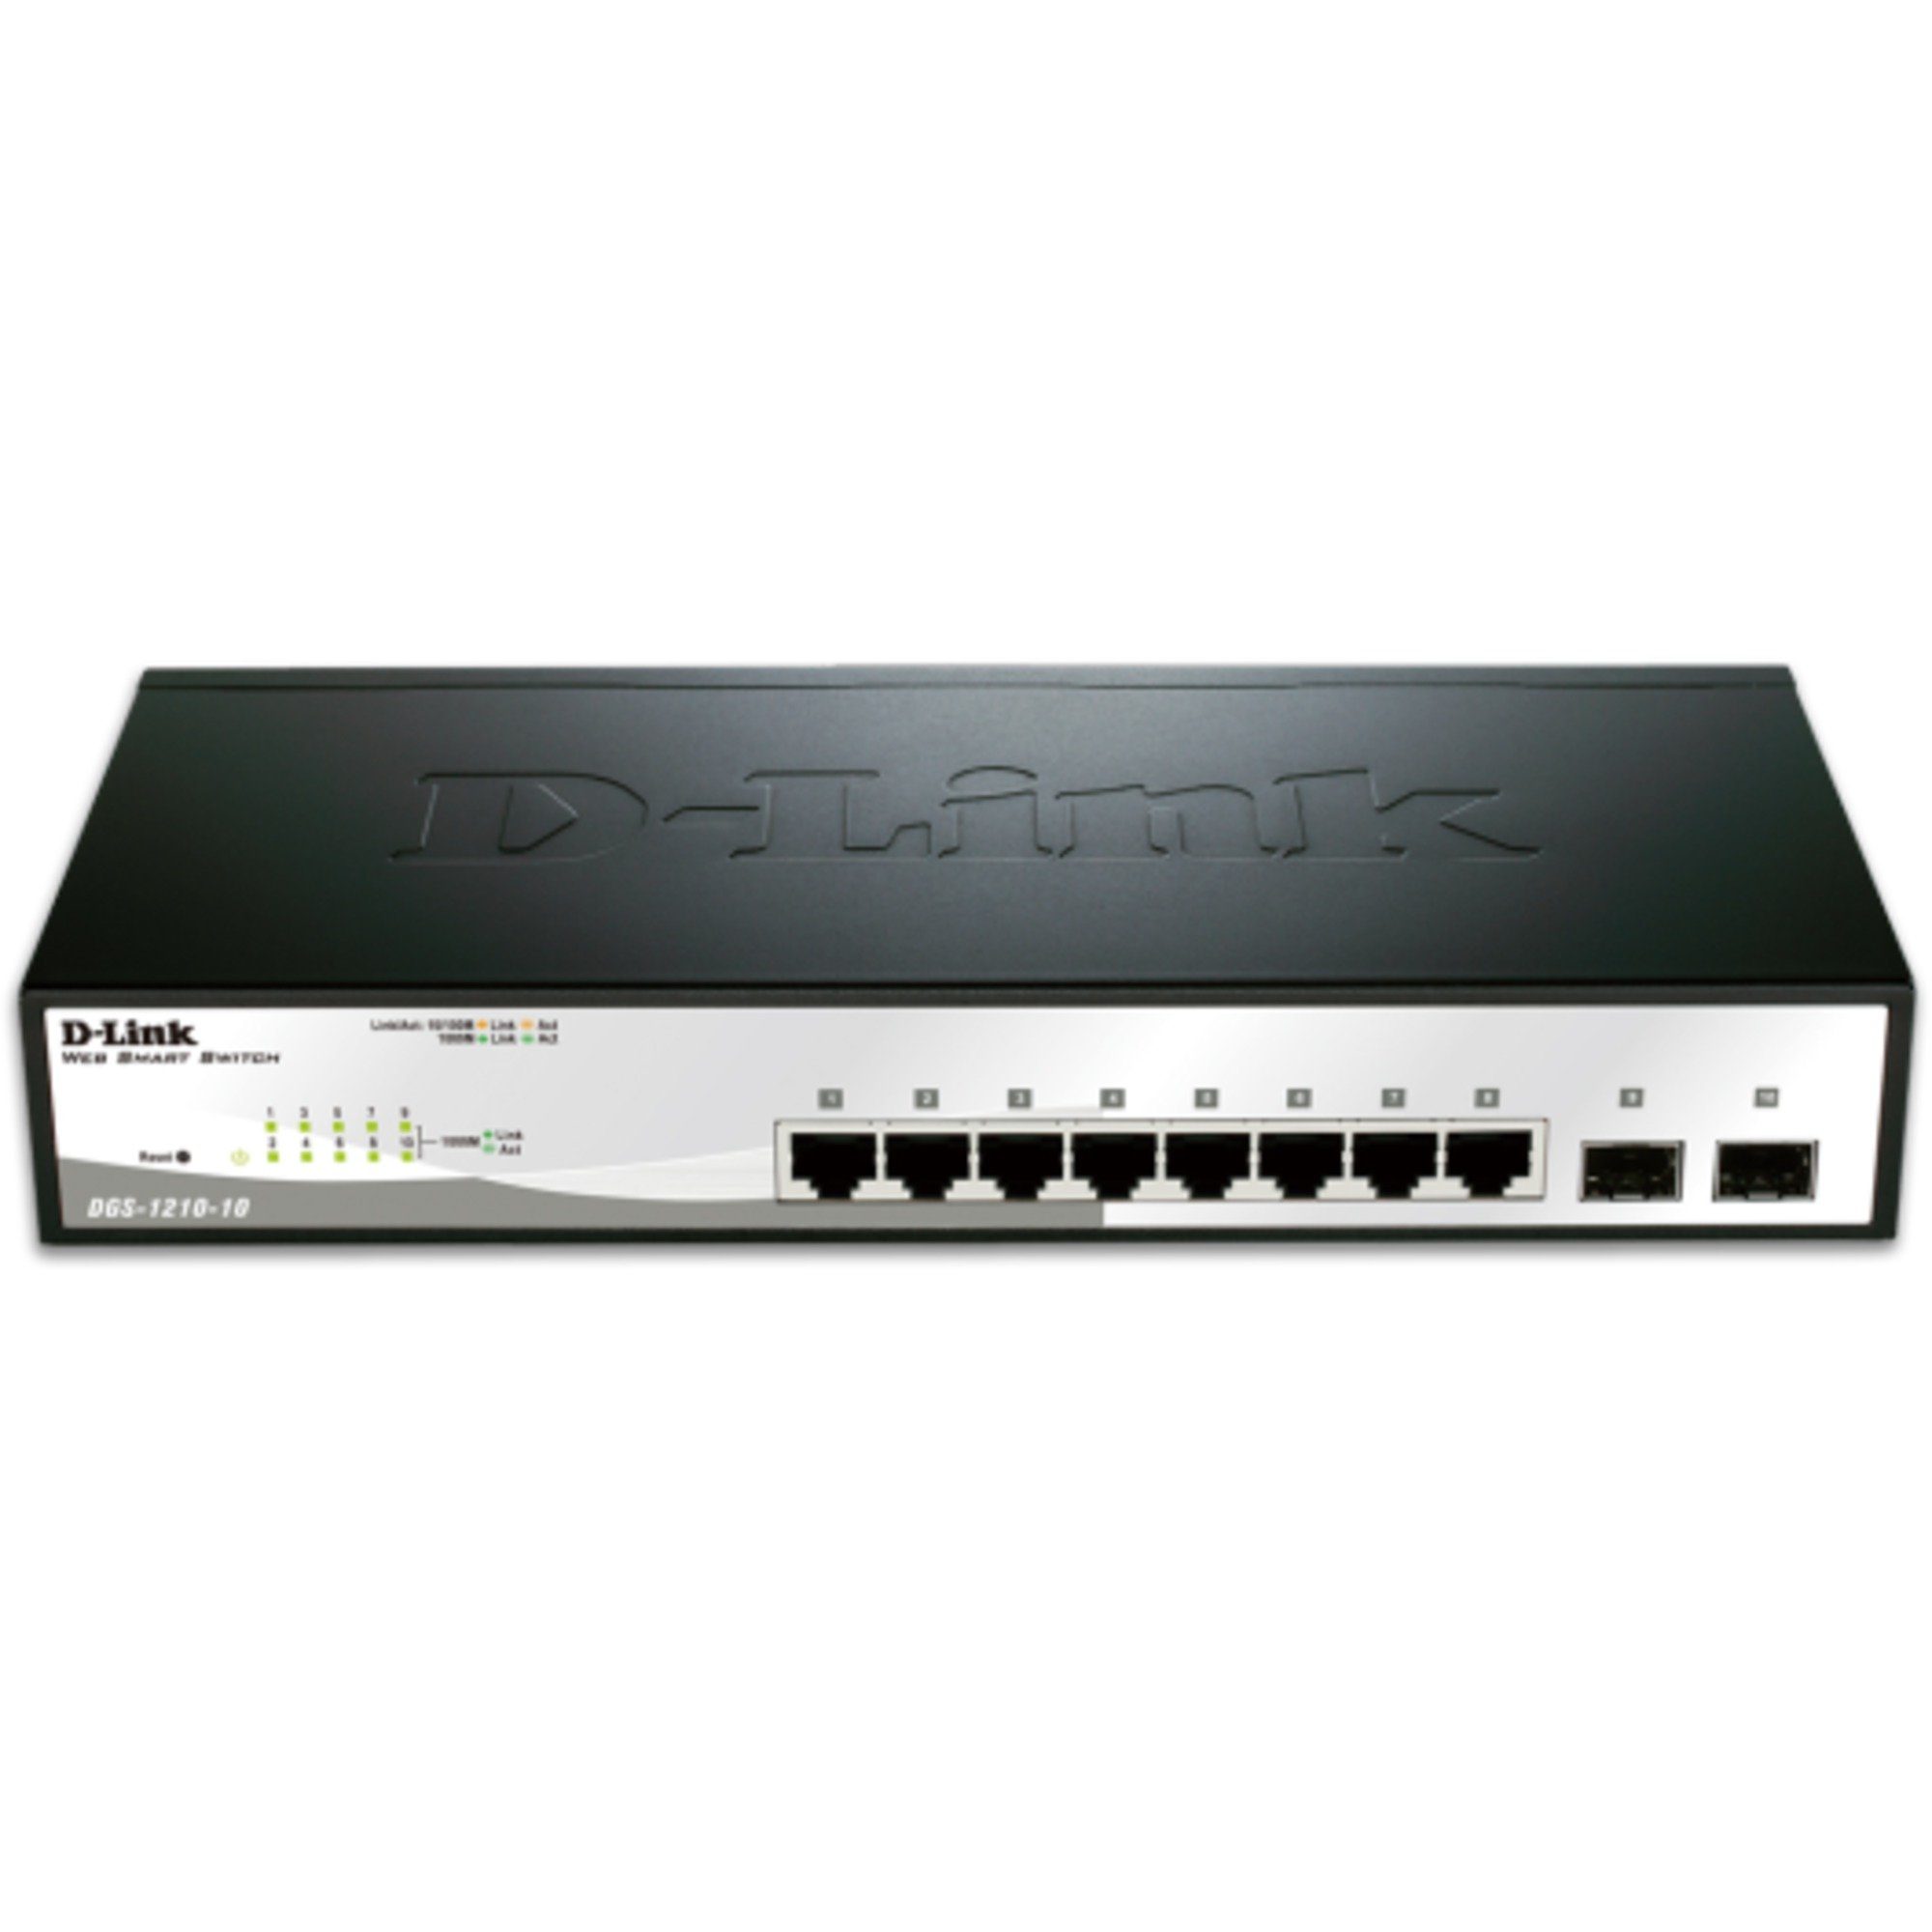 D-Link D-Link DGS-1210-10, Switch Netzwerk-Switch